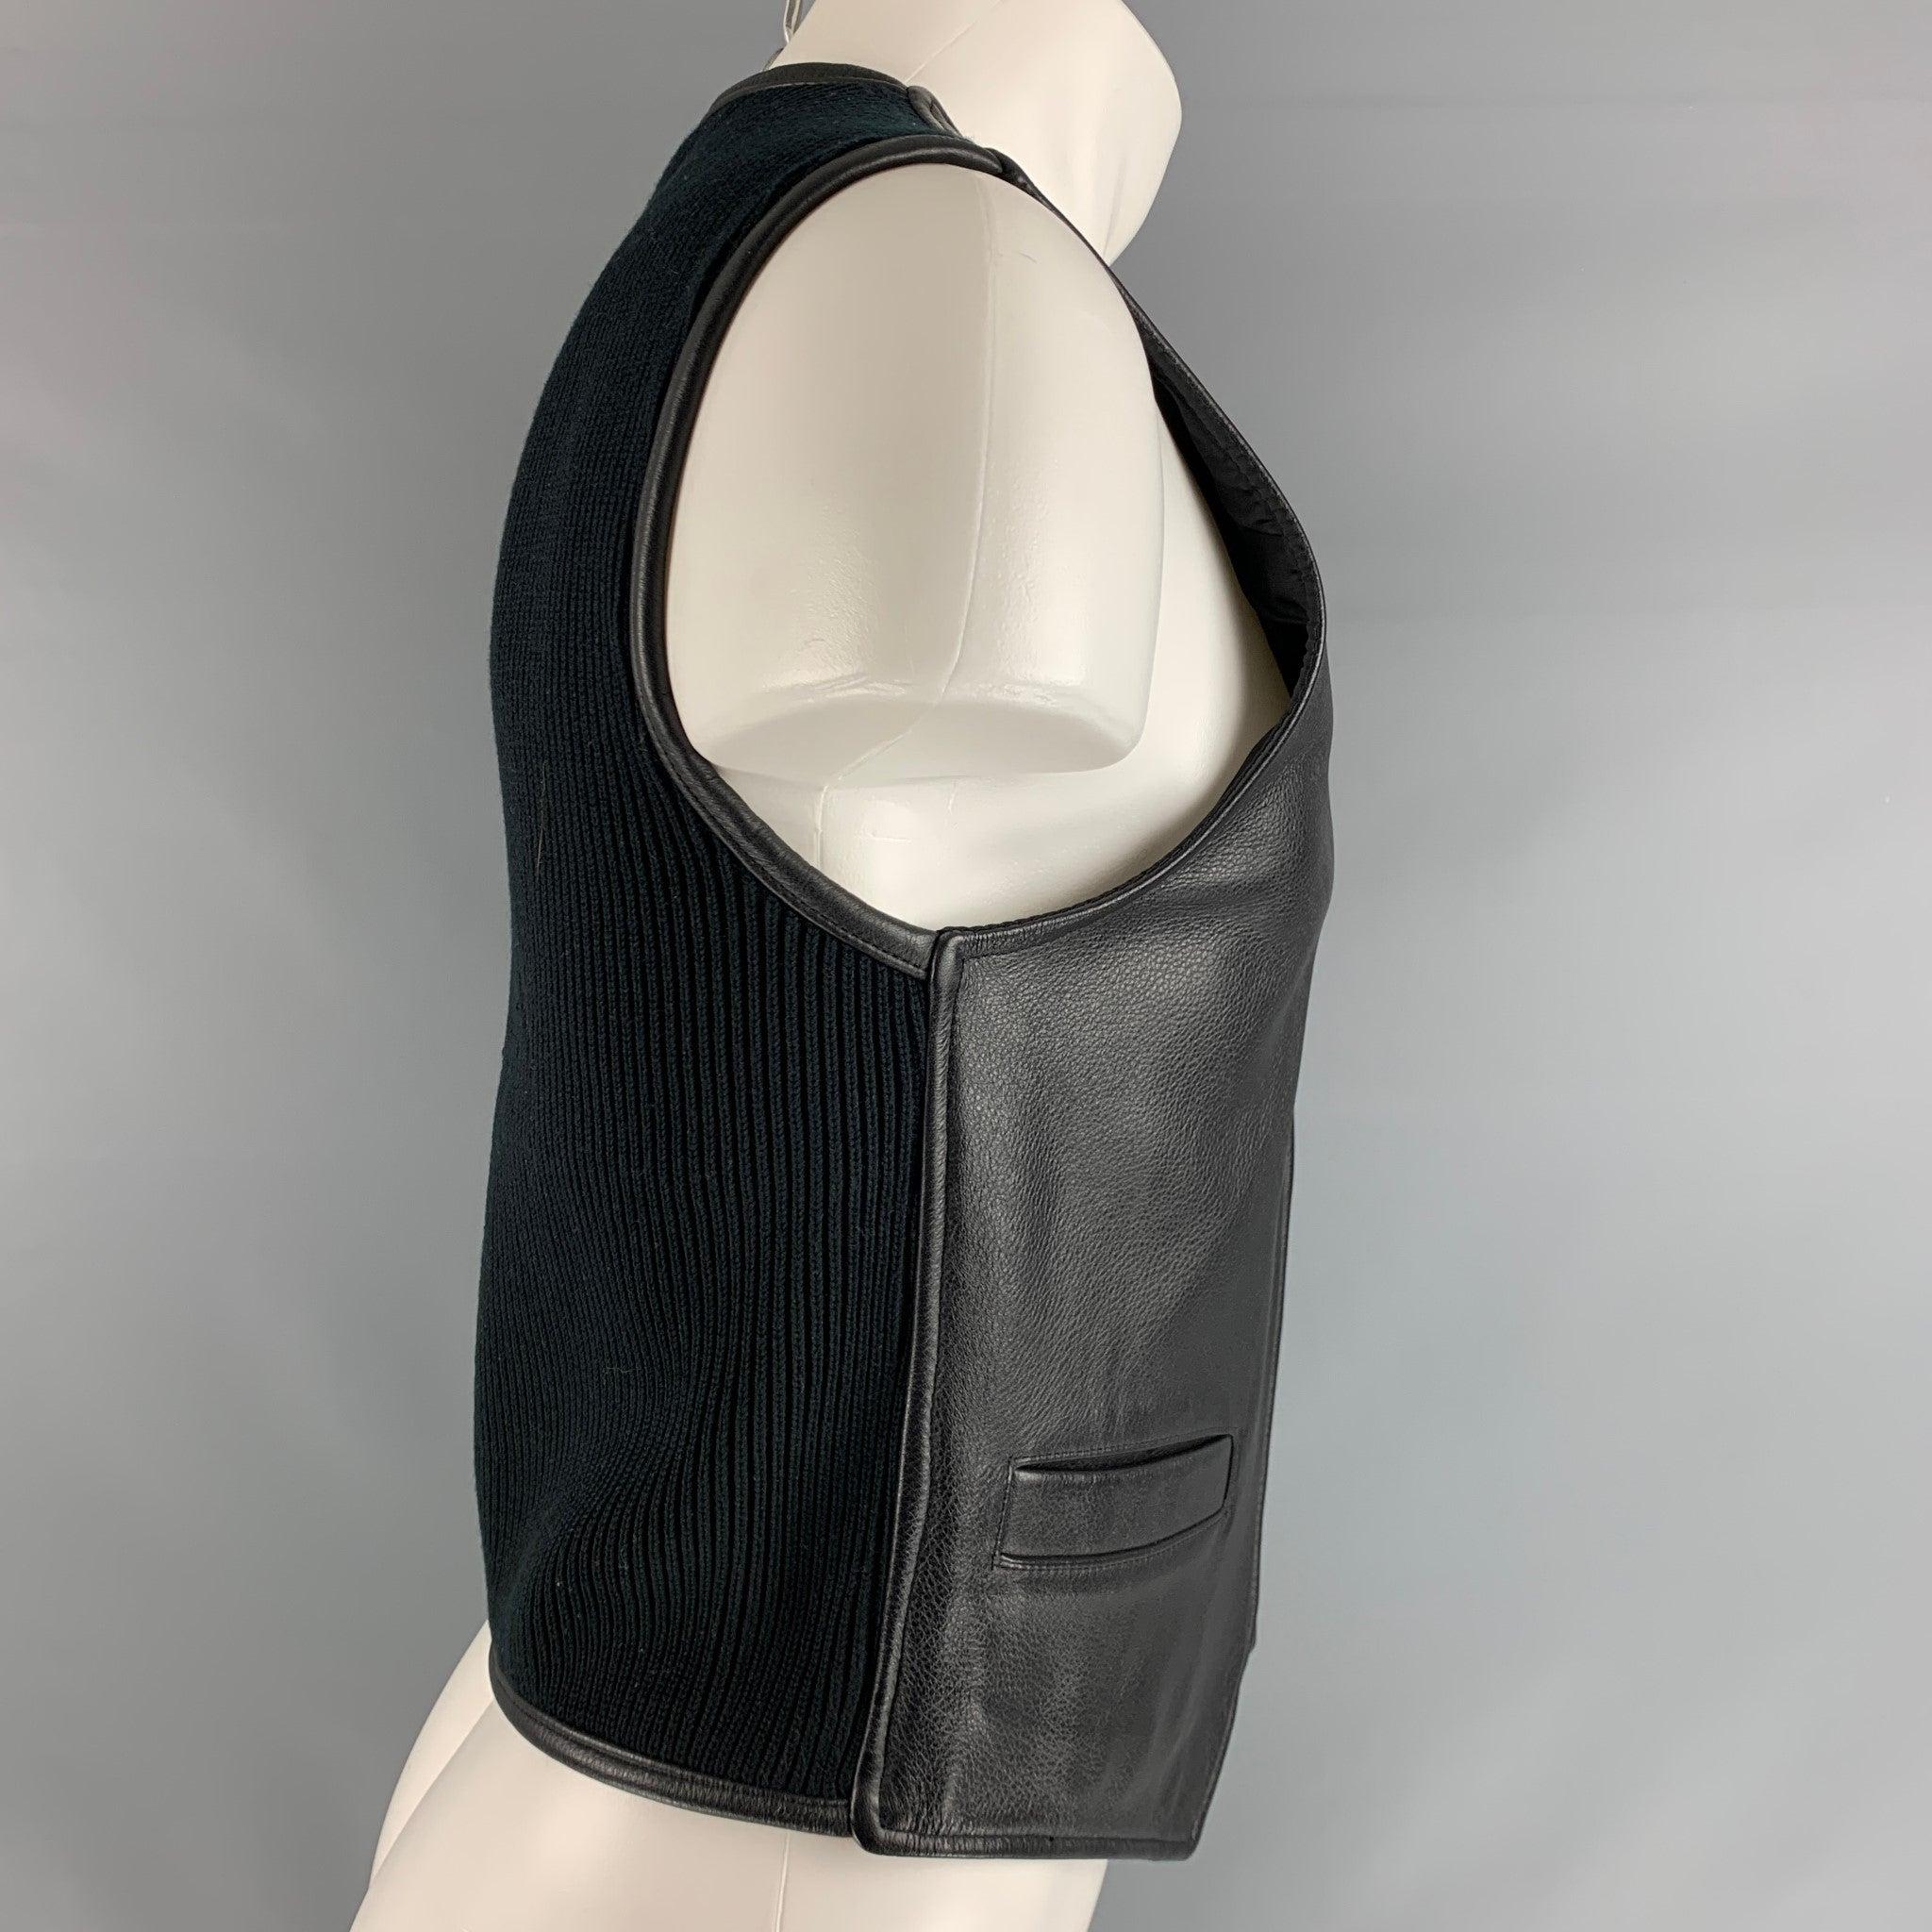 Le gilet DONNA KARAN DKNY se compose d'un devant en cuir noir et d'un dos en maille, avec deux poches passepoilées et une fermeture à glissière. Excellent état d'origine. 

Marqué :   S 

Mesures : 
 
Épaule : 15 pouces Poitrine : 36 pouces Longueur